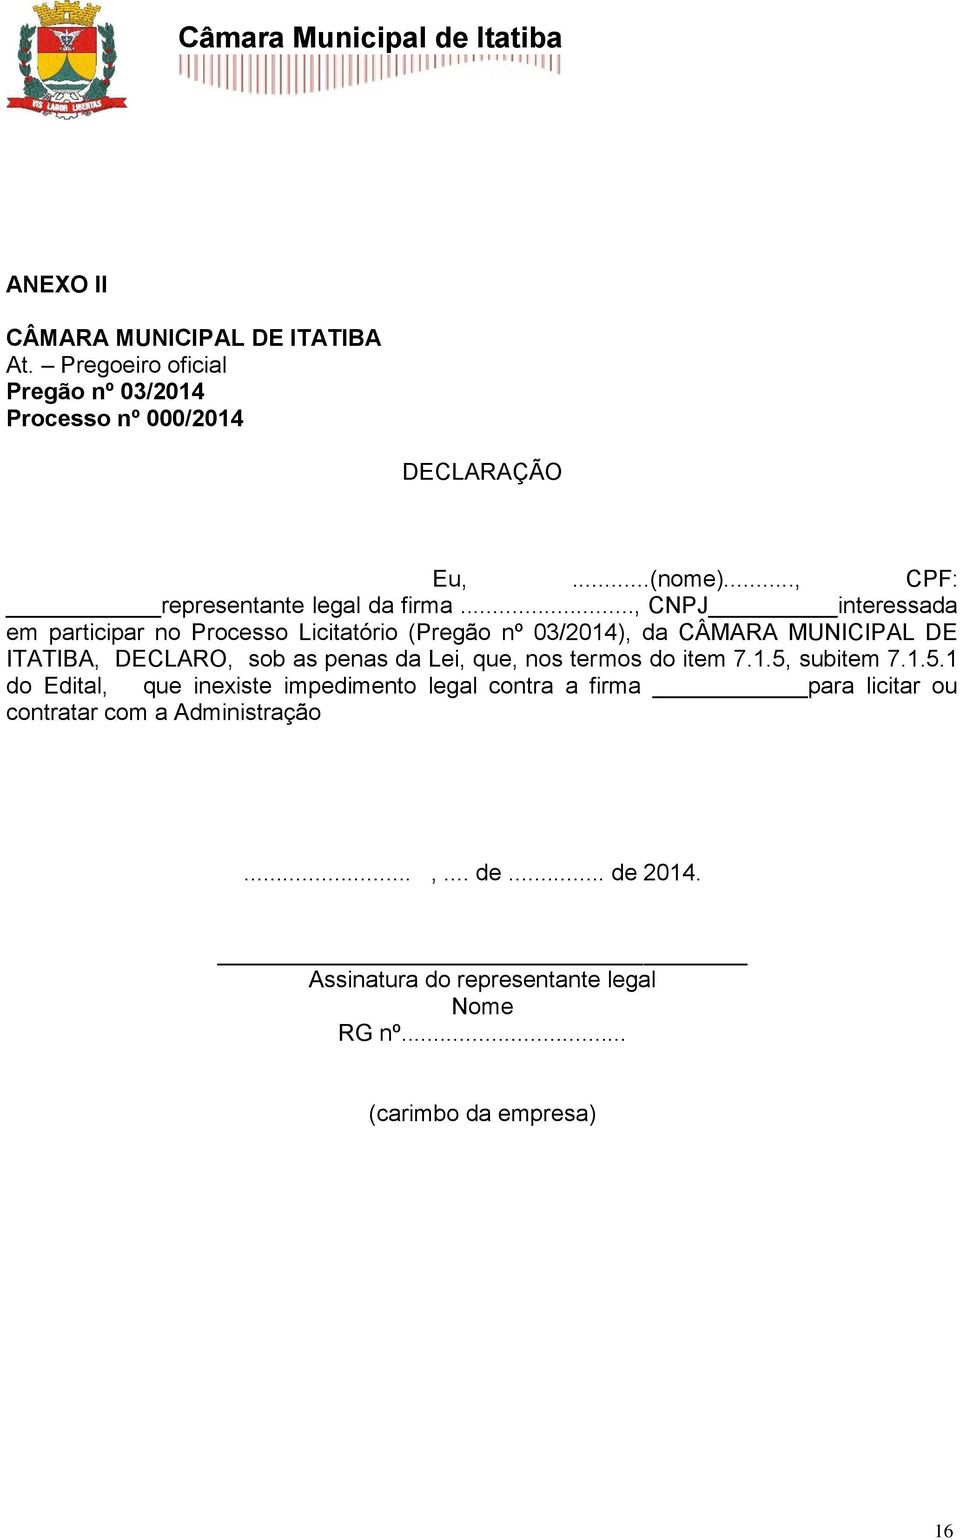 .., CNPJ interessada em participar no Processo Licitatório (Pregão nº 03/2014), da CÂMARA MUNICIPAL DE ITATIBA, DECLARO, sob as penas da